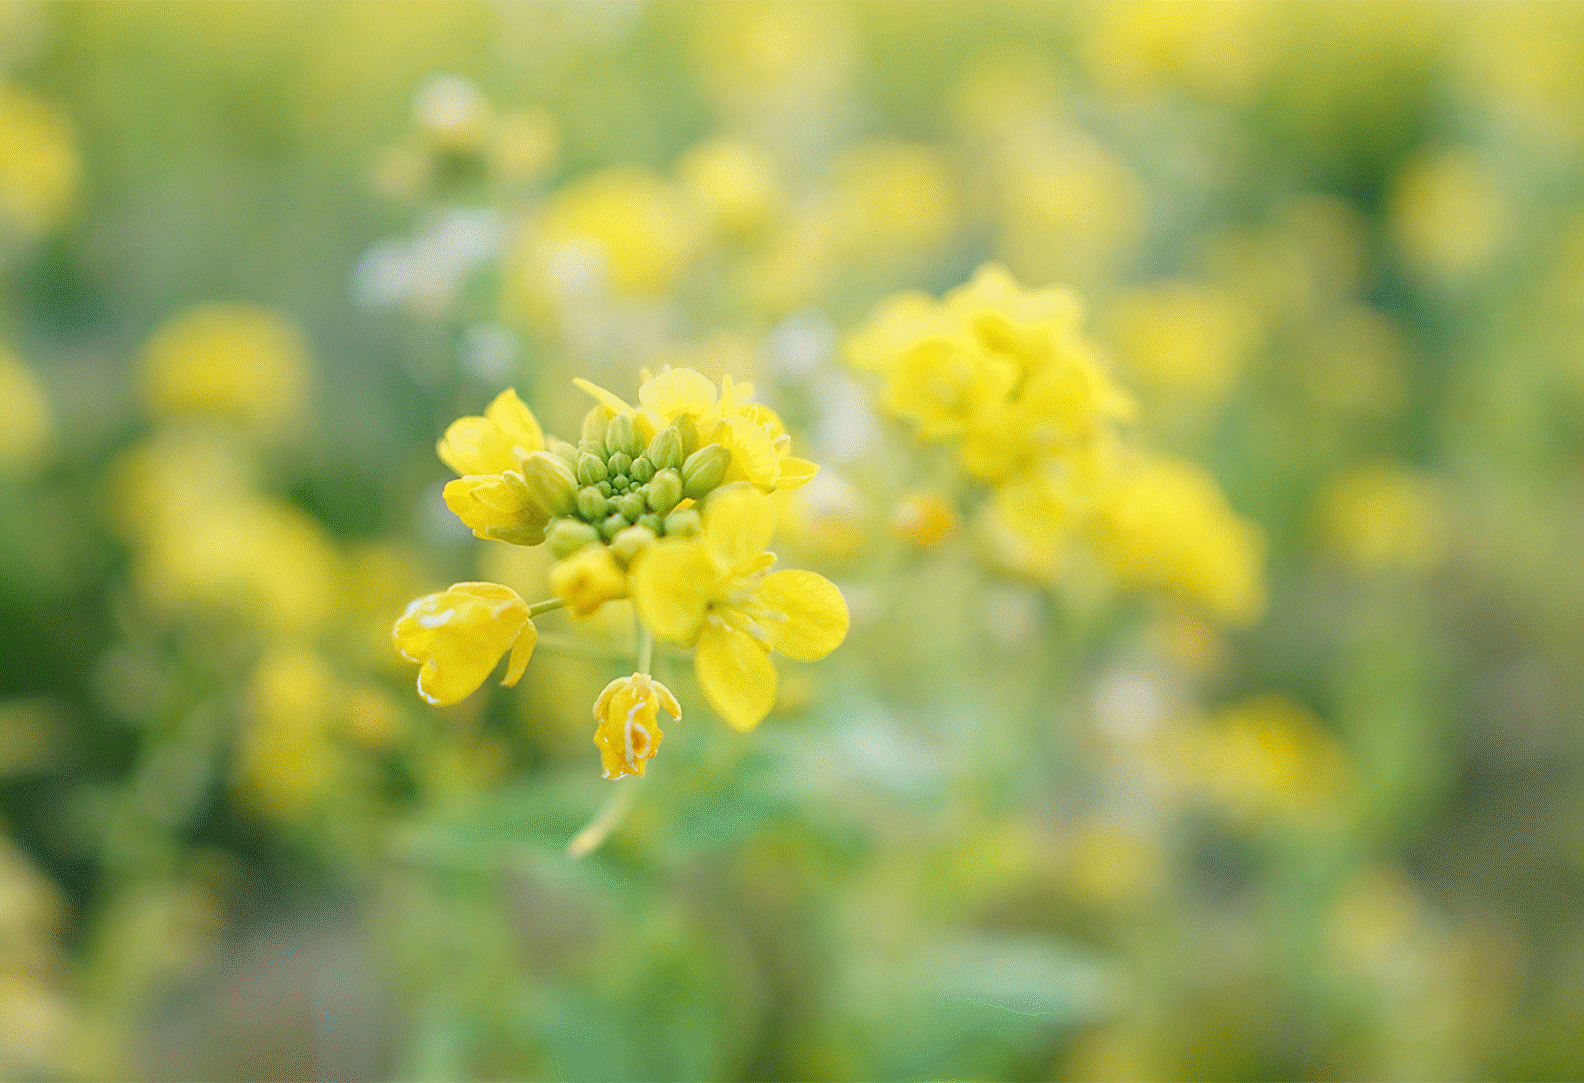 黃色花朵影像